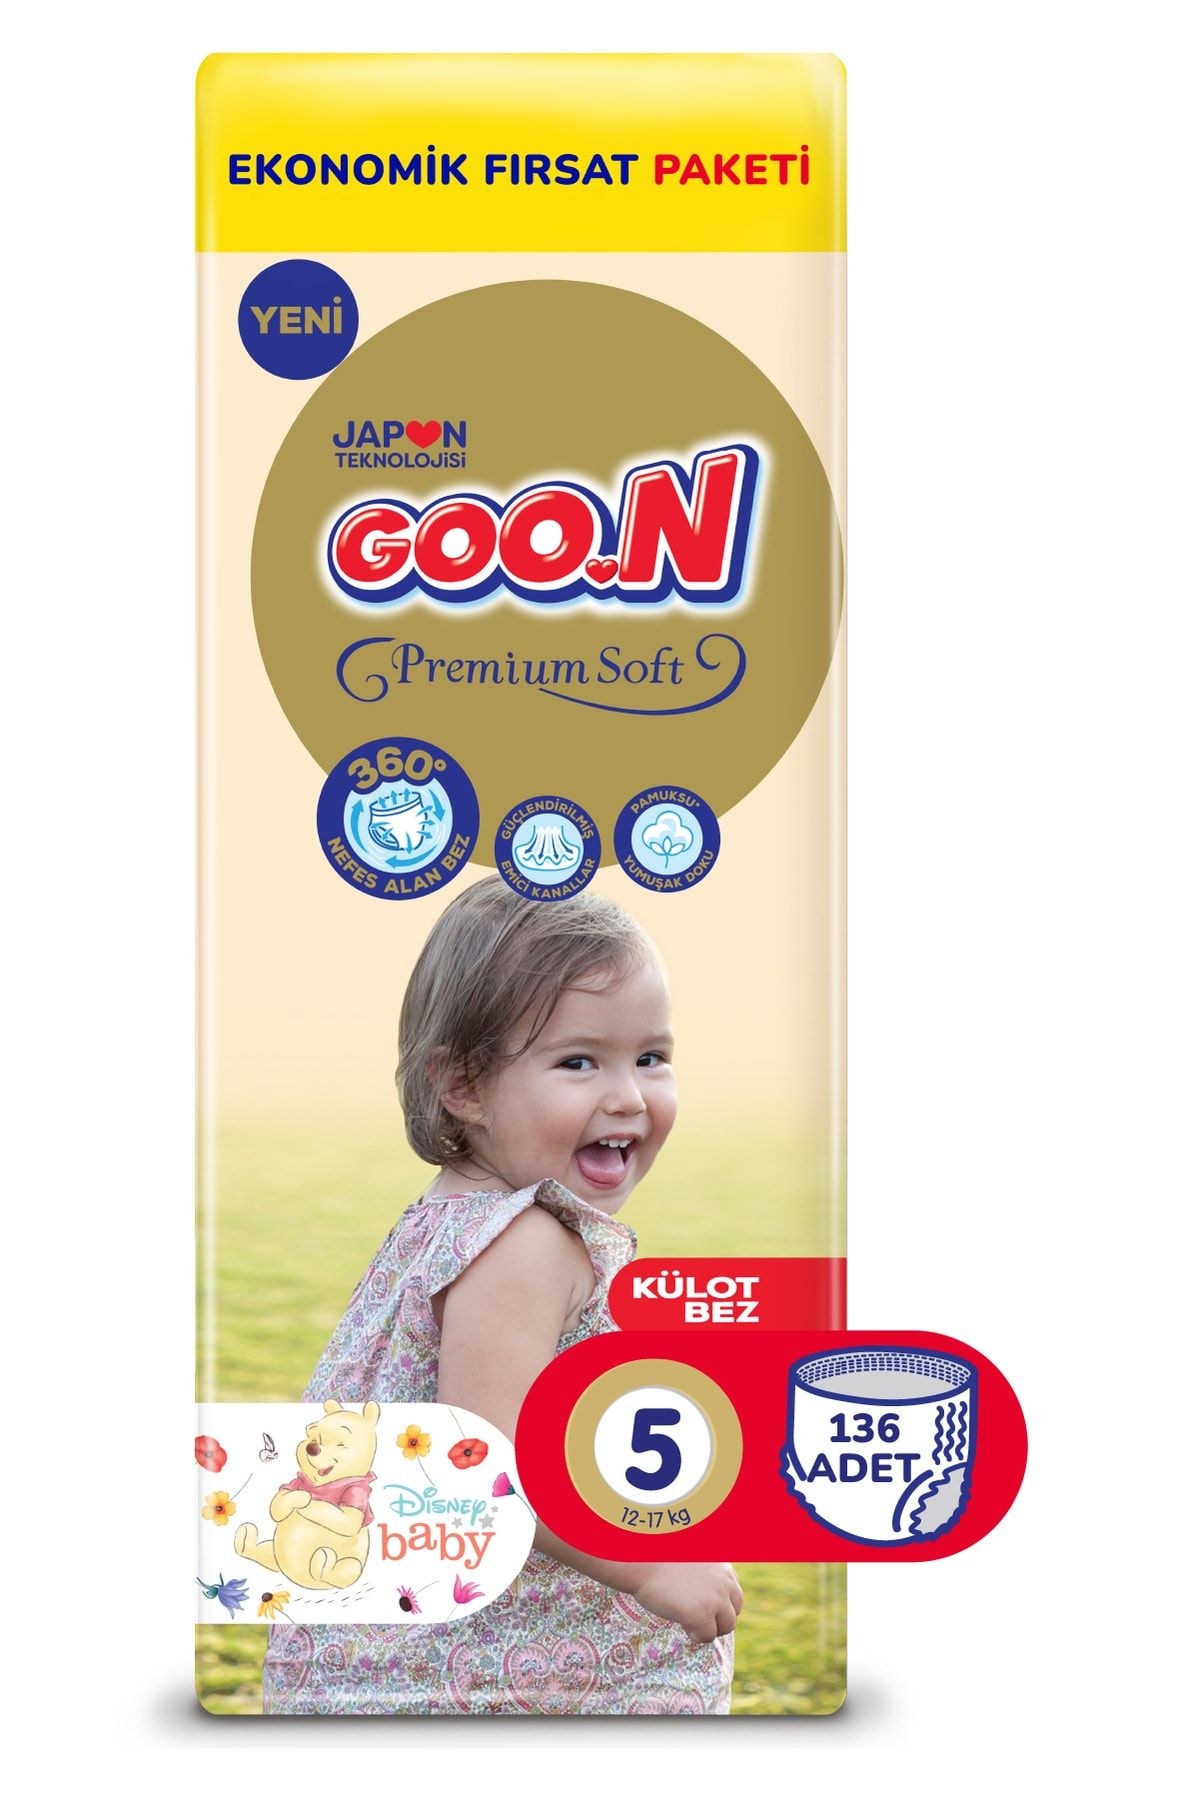 Goo.n Premium Soft 5 Numara Süper Yumuşak Külot Bebek Bezi Ekonomik Fırsat Paketi - 136 Adet